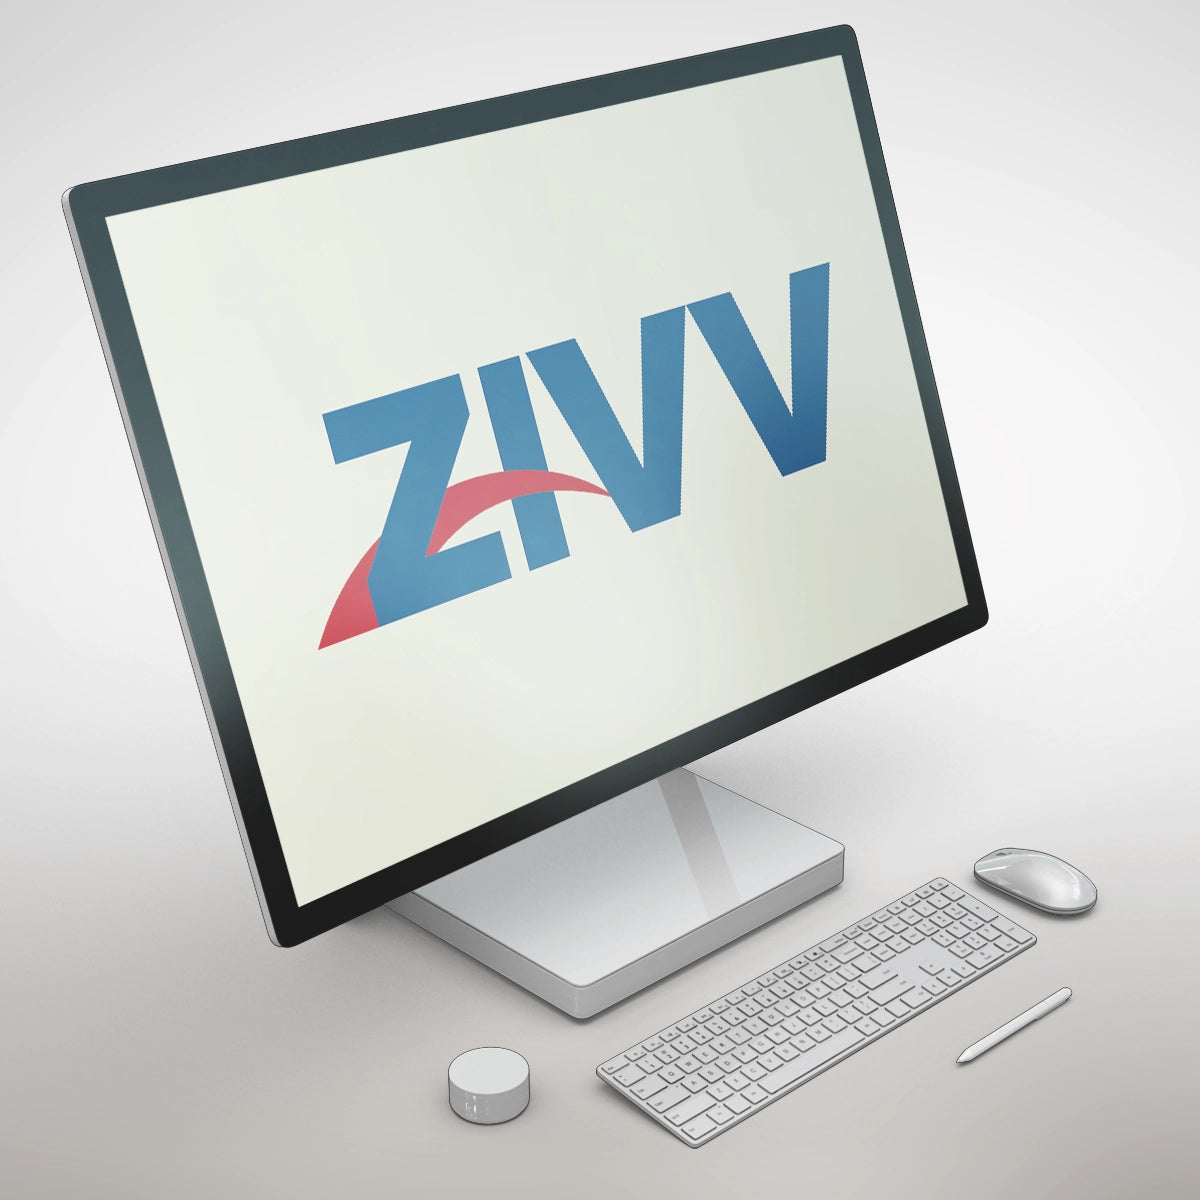 Zivv.com